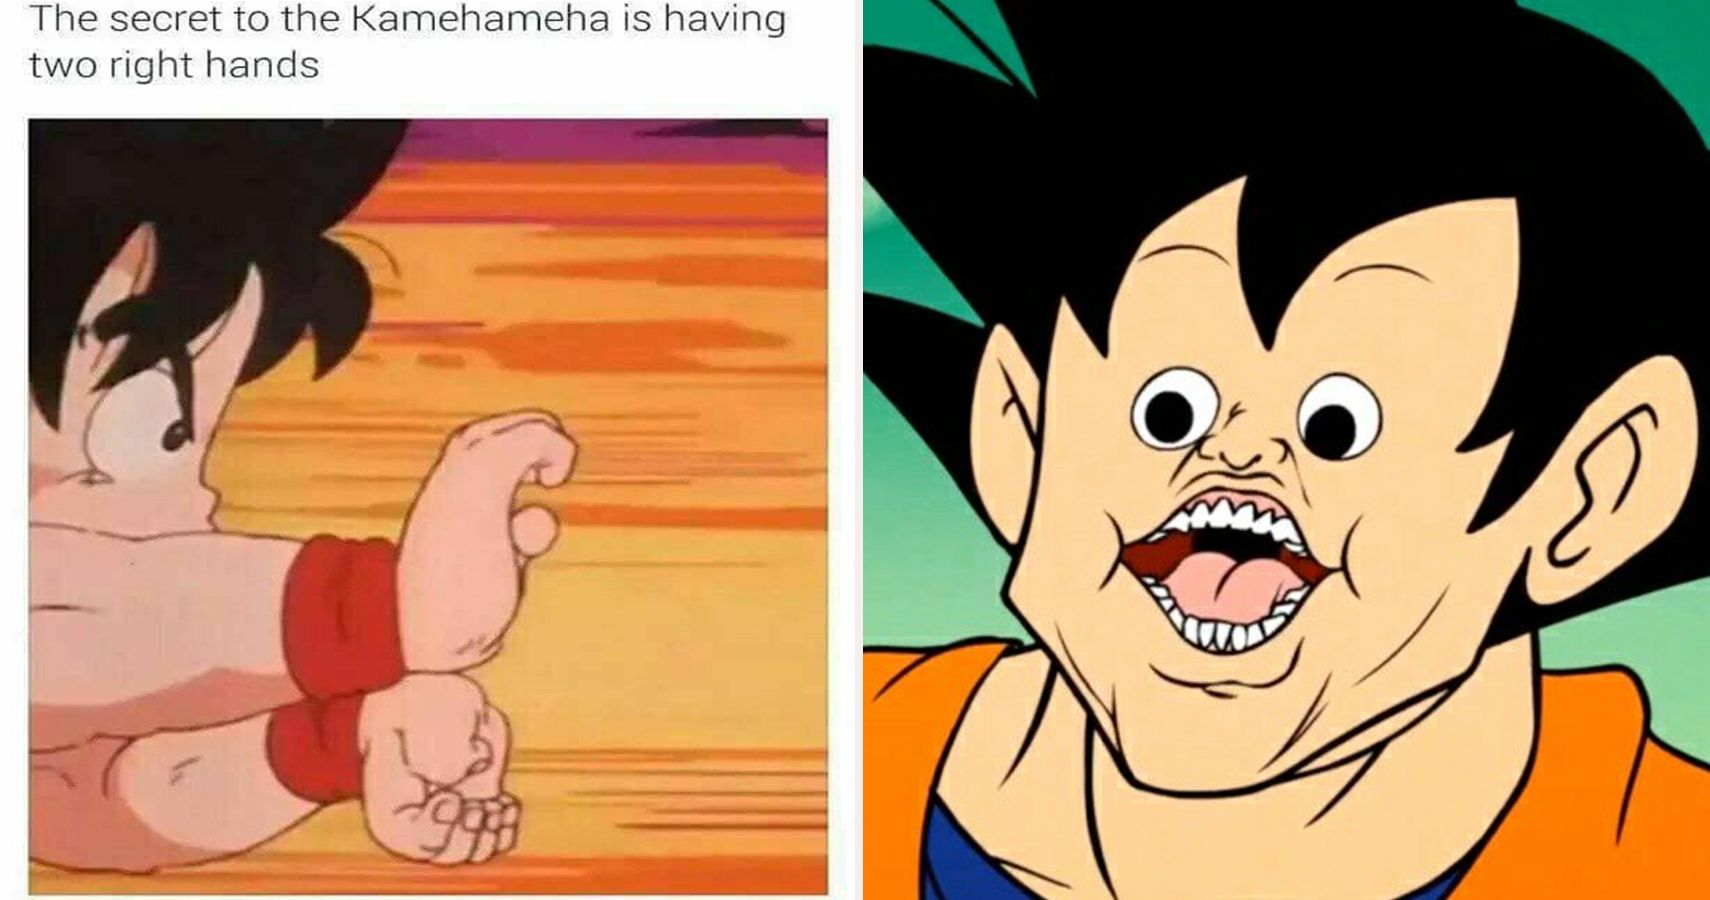 hadouken vs kamehameha meme